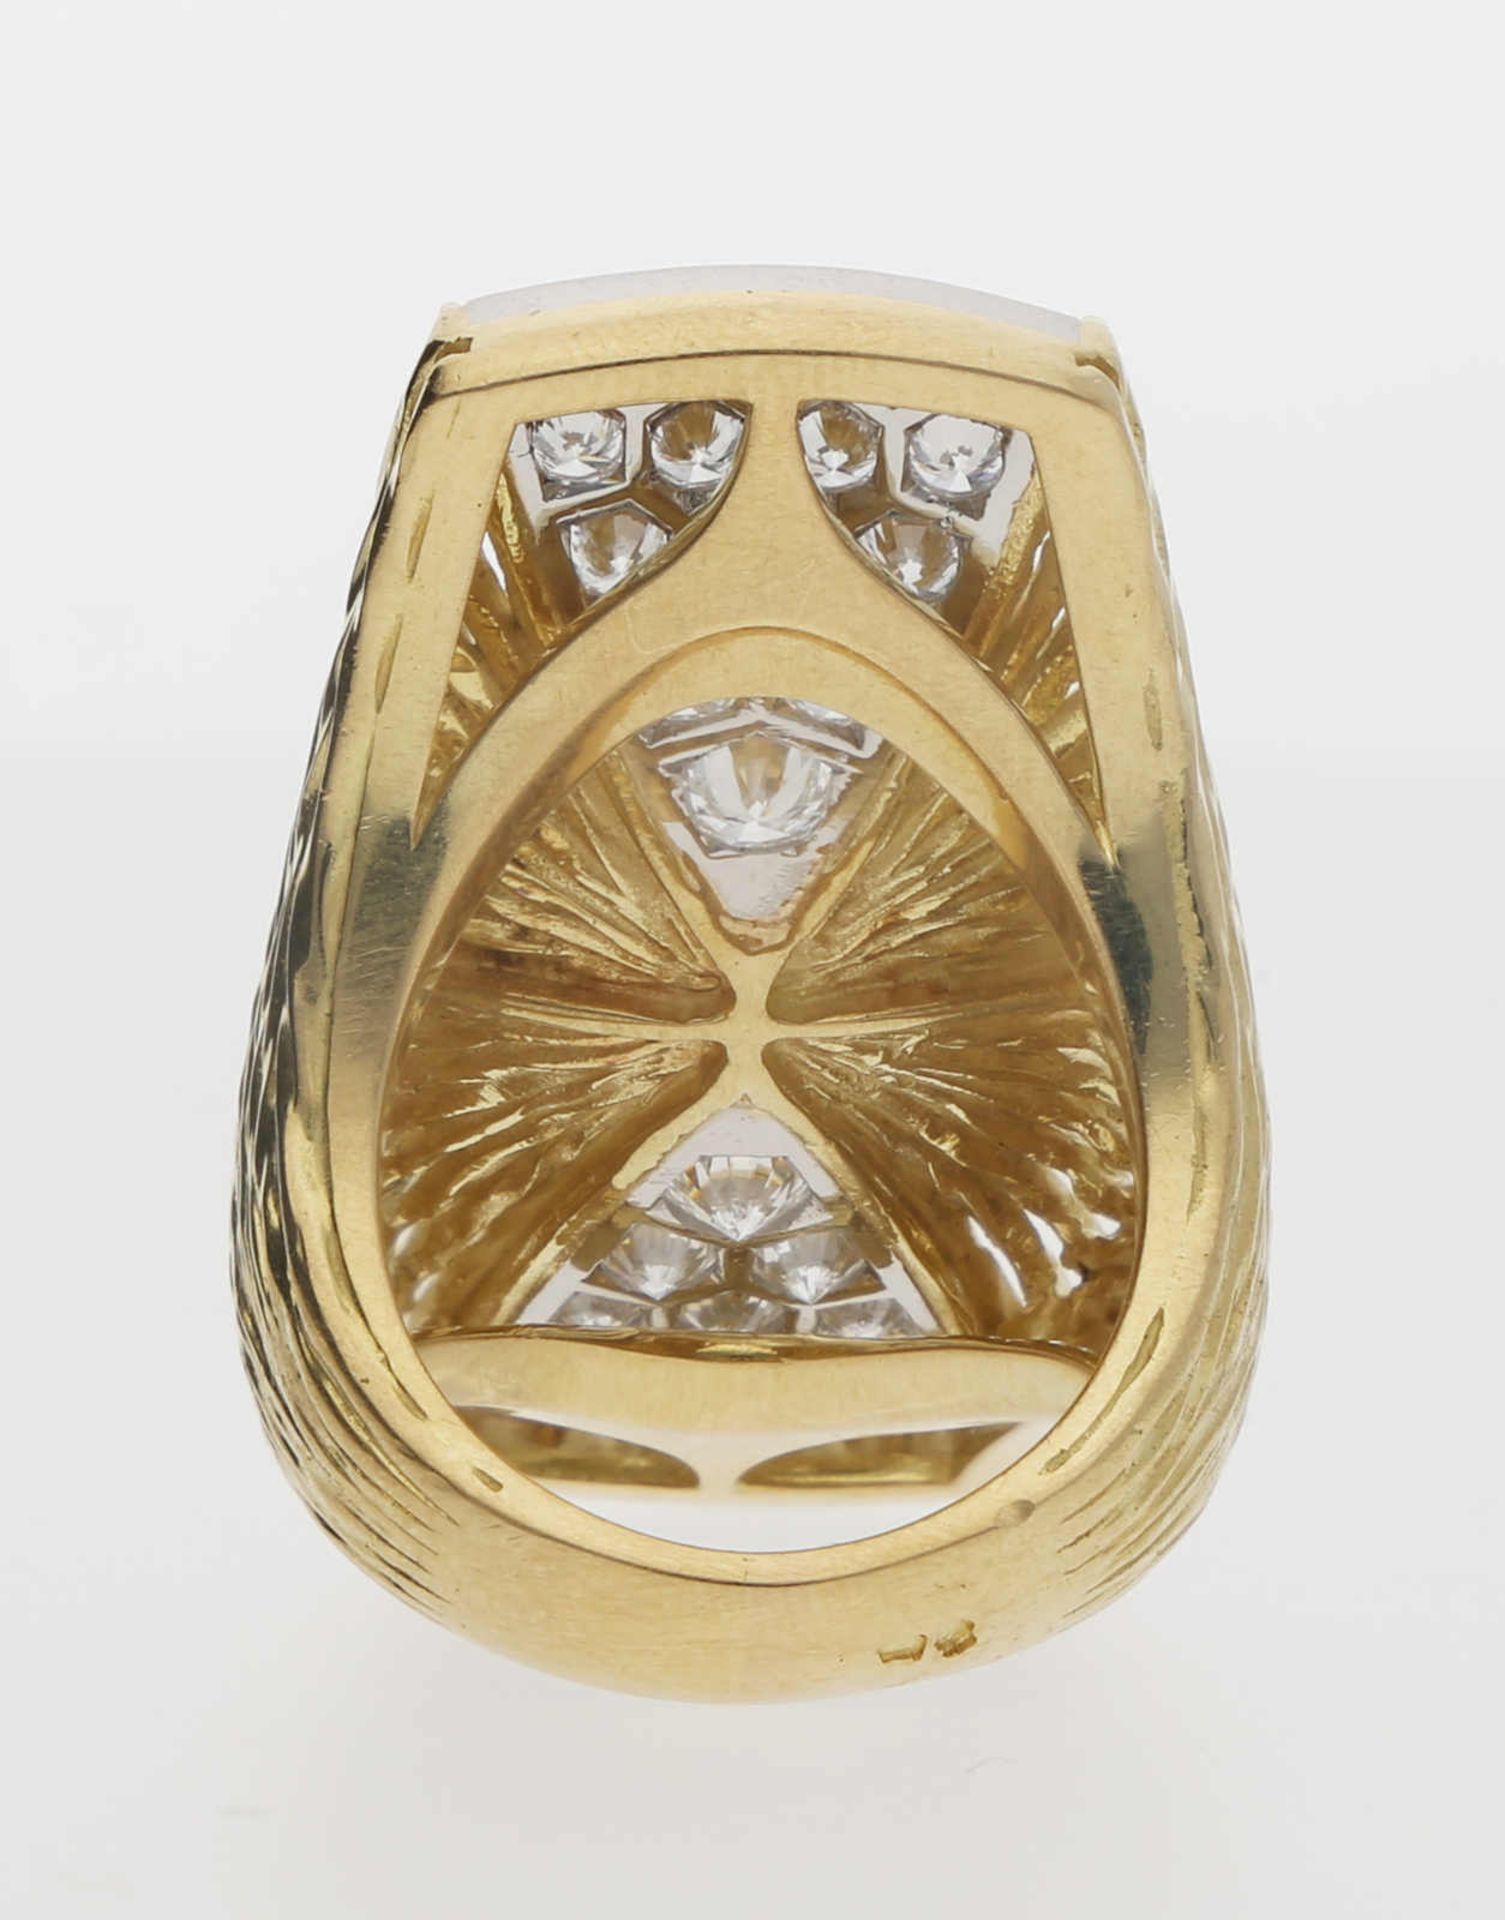 Piaget-Ring Extravaganter Piaget-Ring in Gelbgold/Weissgold 18K mit feinsten Brillanten von zus. ca. - Bild 3 aus 3